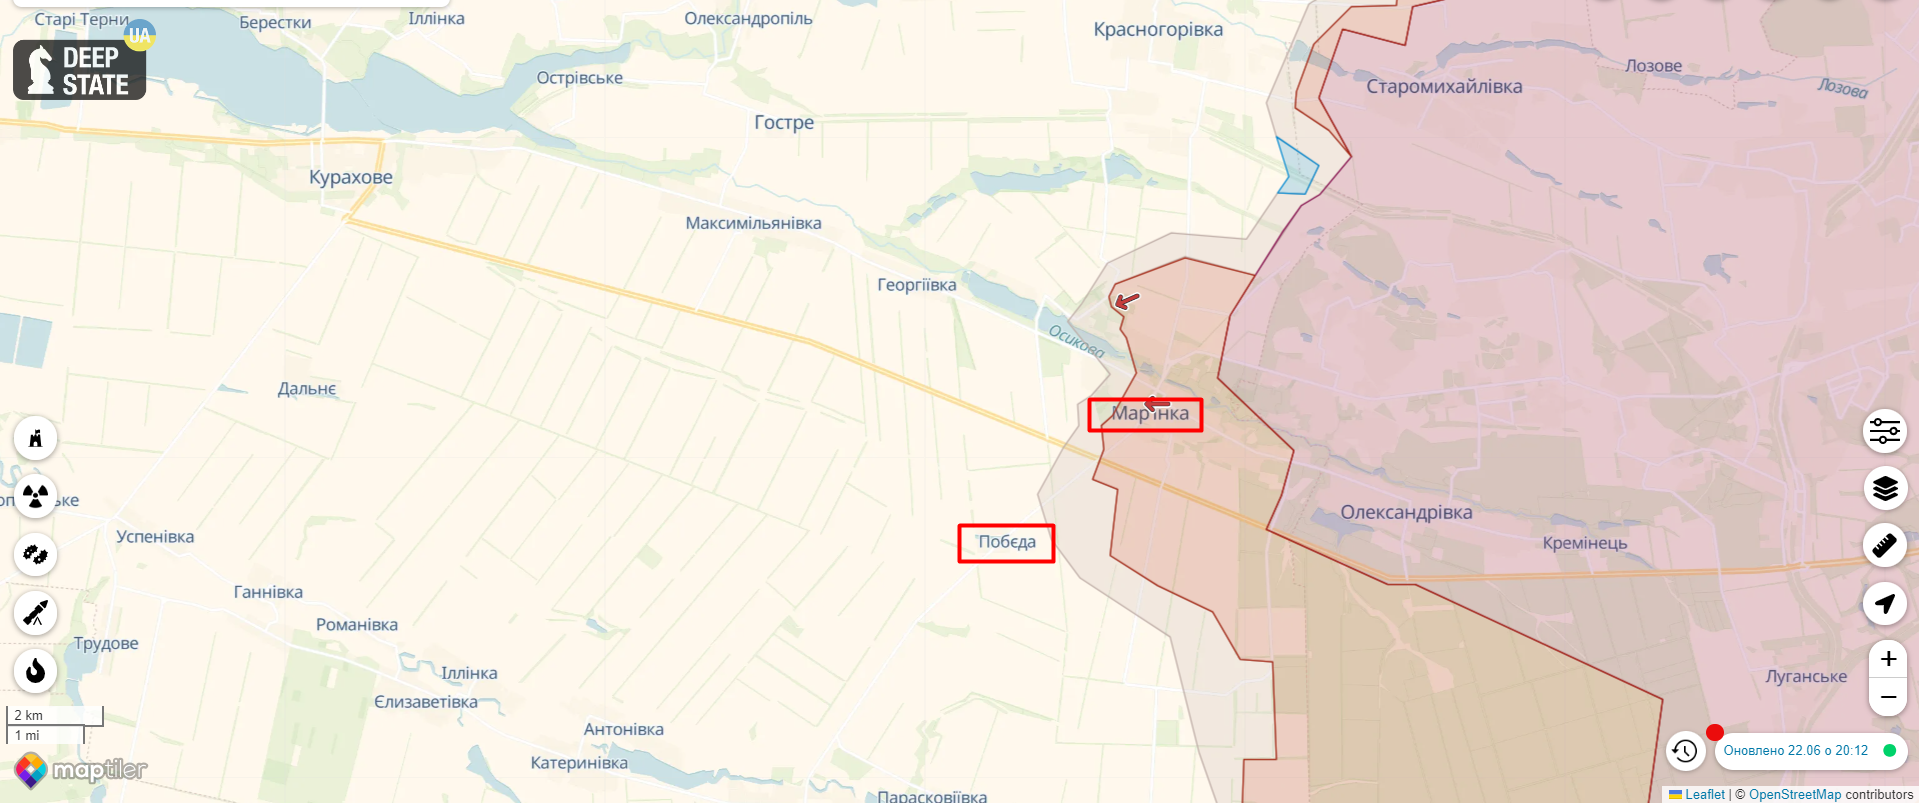 Війська РФ намагалися наступати в районі Білогорівки, але отримали відсіч від ЗСУ:  Генштаб розповів про ситуацію на фронті. Карта